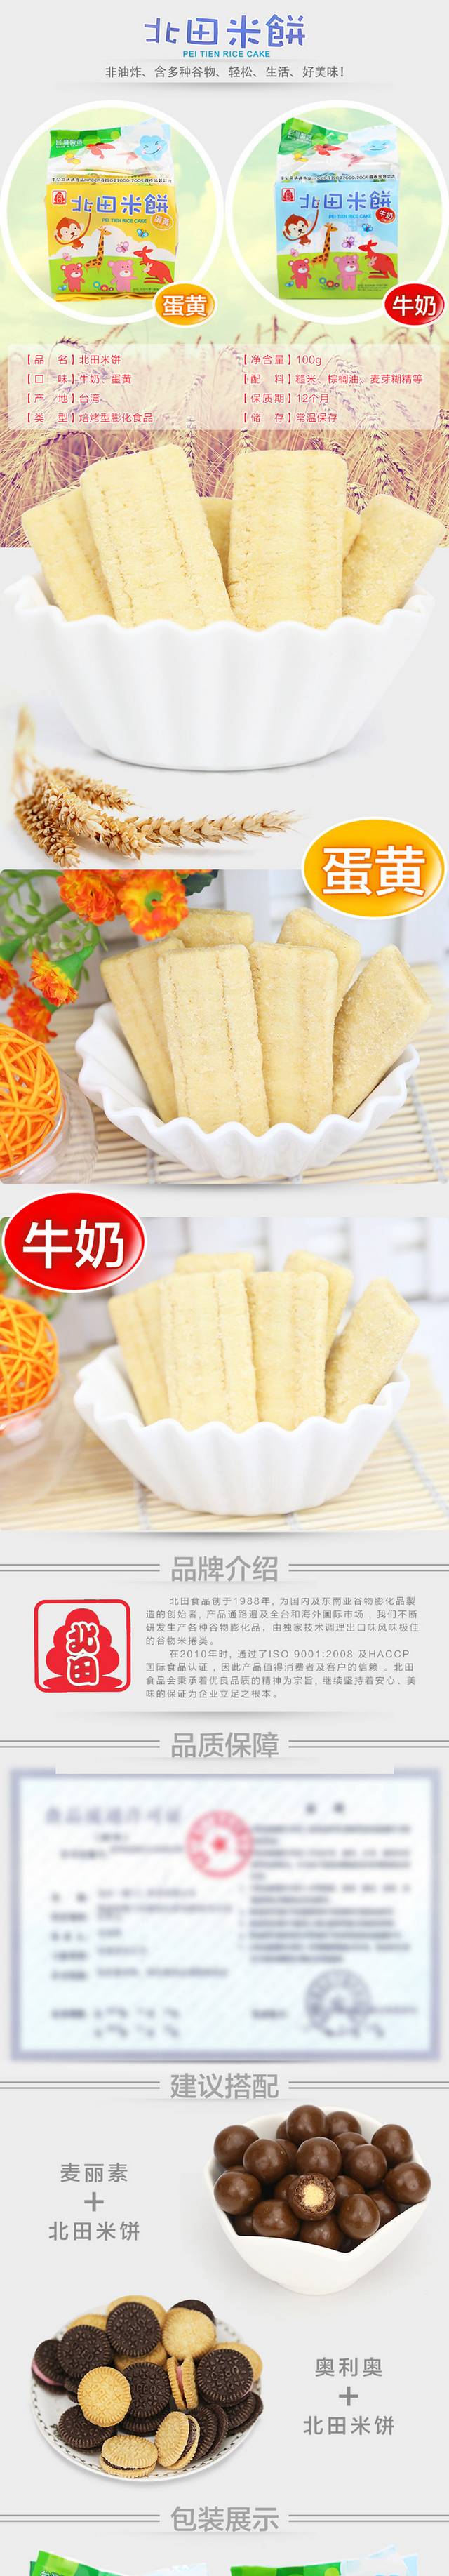 宝天猫食品米饼详情页描述模板